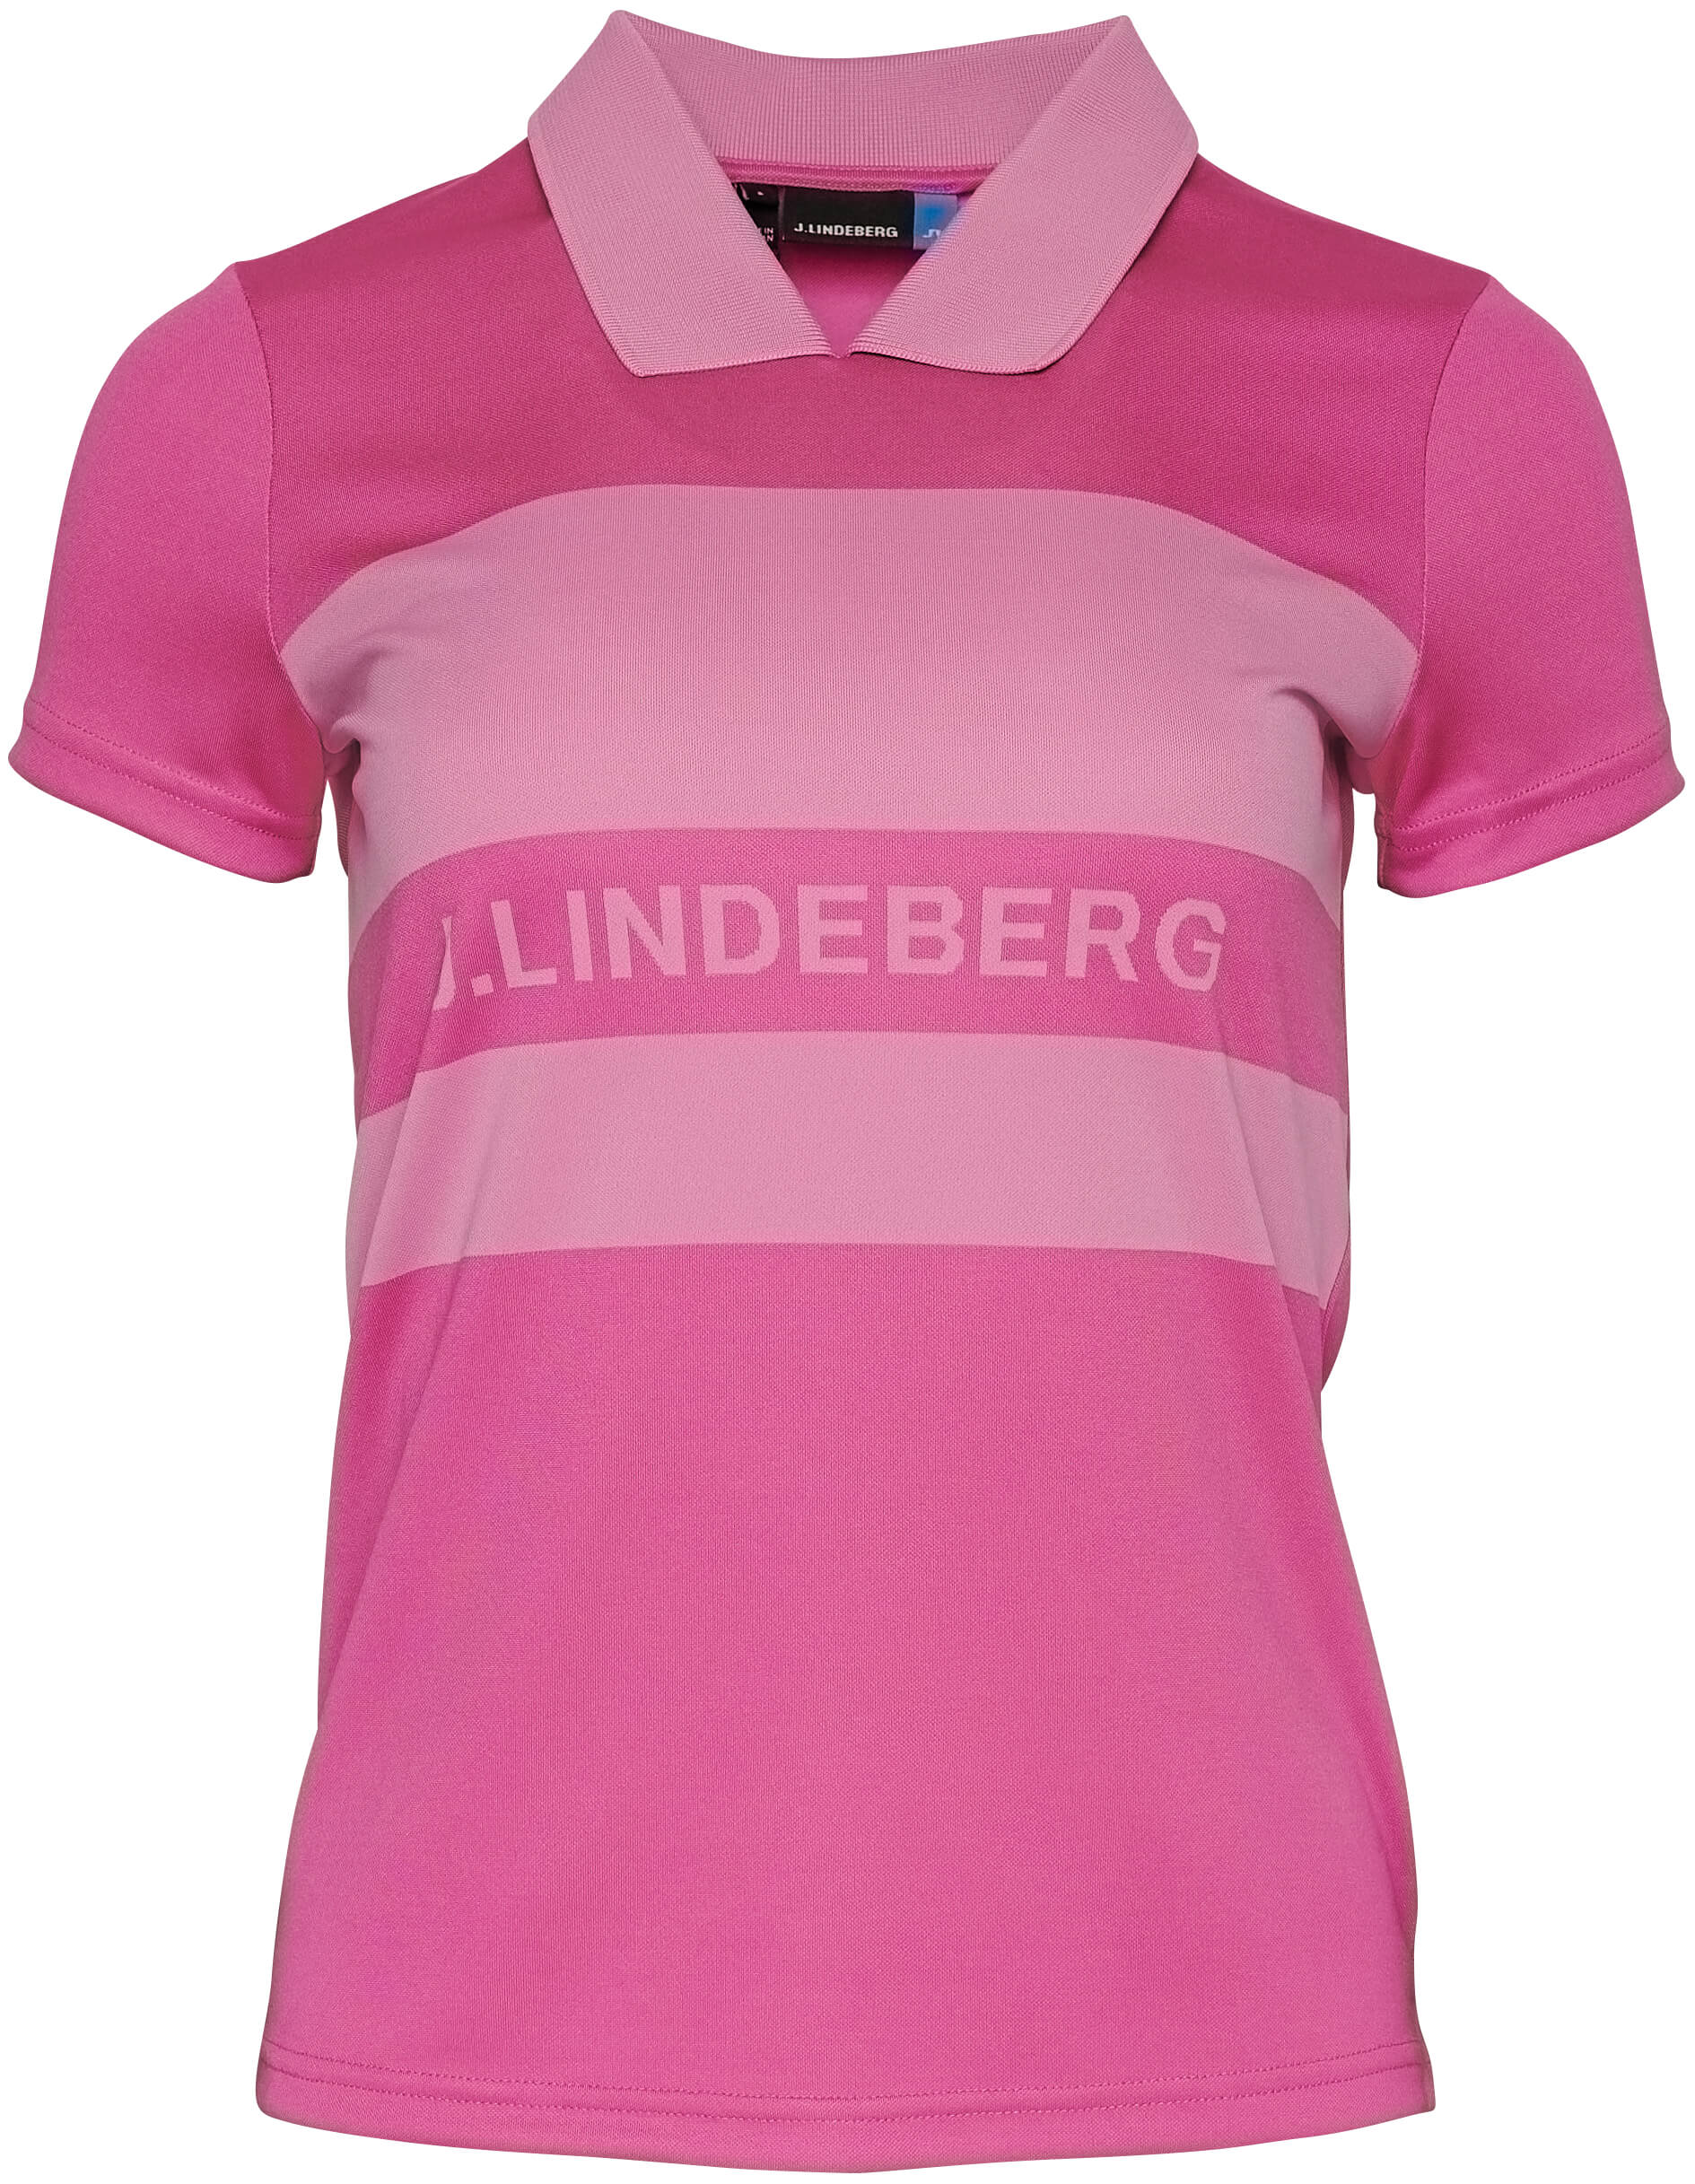 J.Lindeberg Corinna TX Jaquard Polo, pop pink